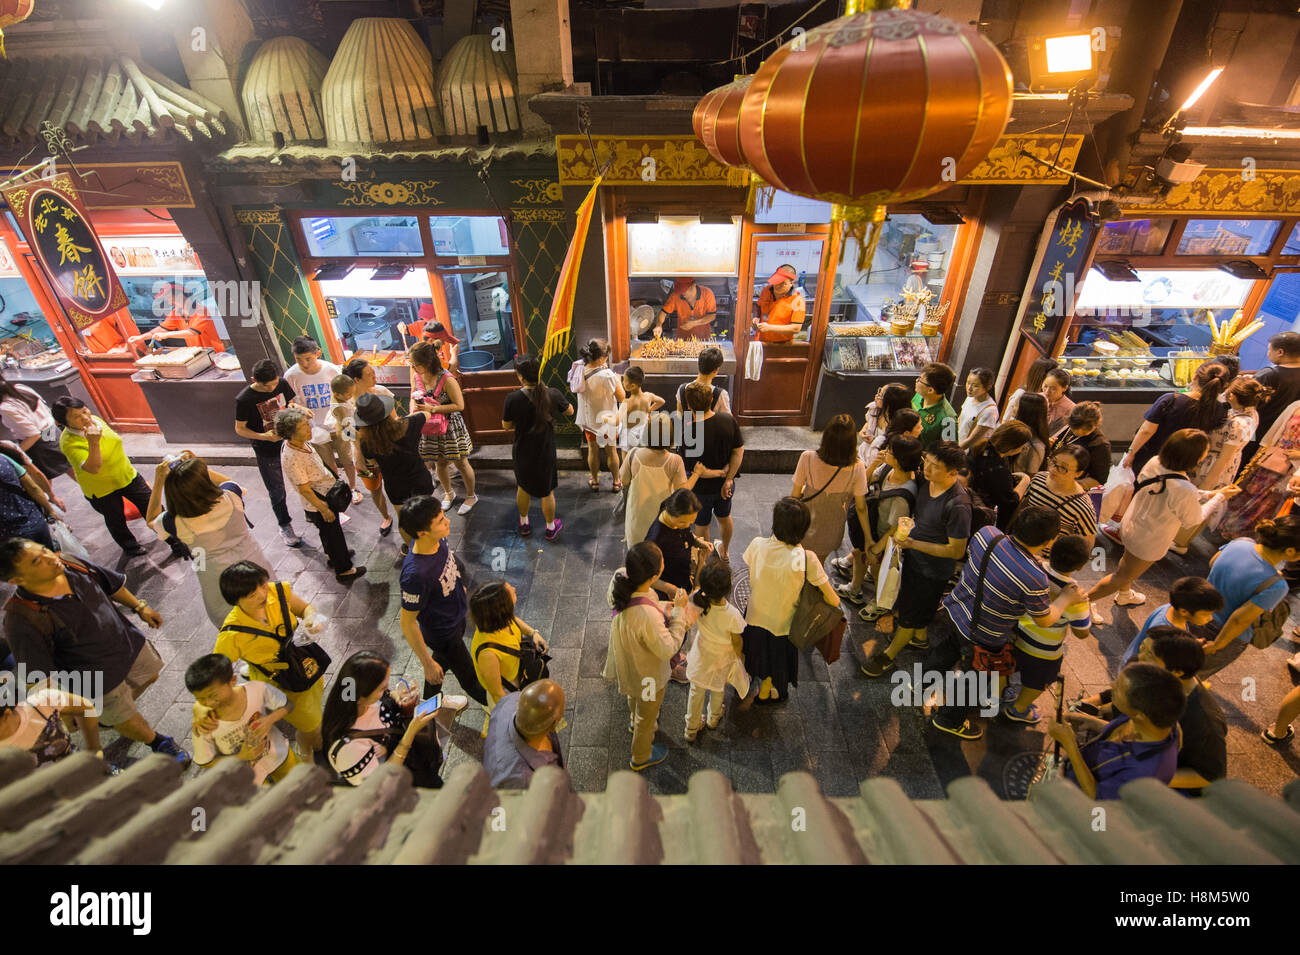 Pechino, Cina - Una folla di persone a piedi attraverso la Donghuamen Snack Mercato Notturno, un grande mercato all'aperto che è un attractio Foto Stock